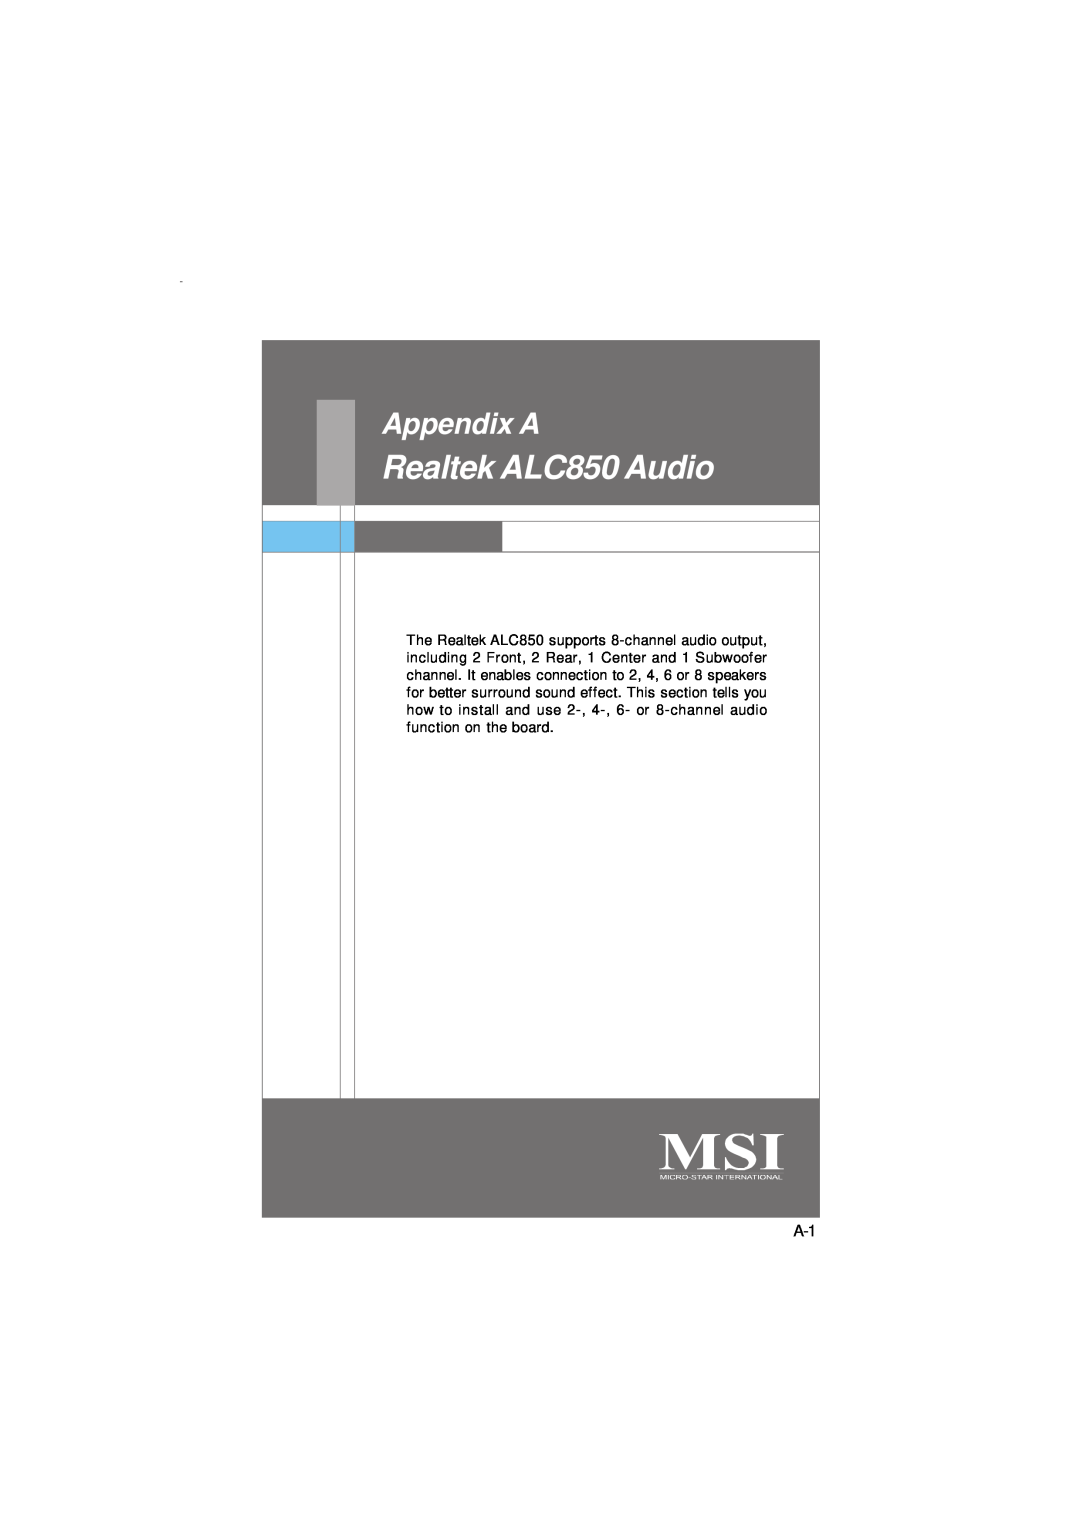 IBM G52-72361X2 manual Realtek ALC850 Audio, Appendix A 